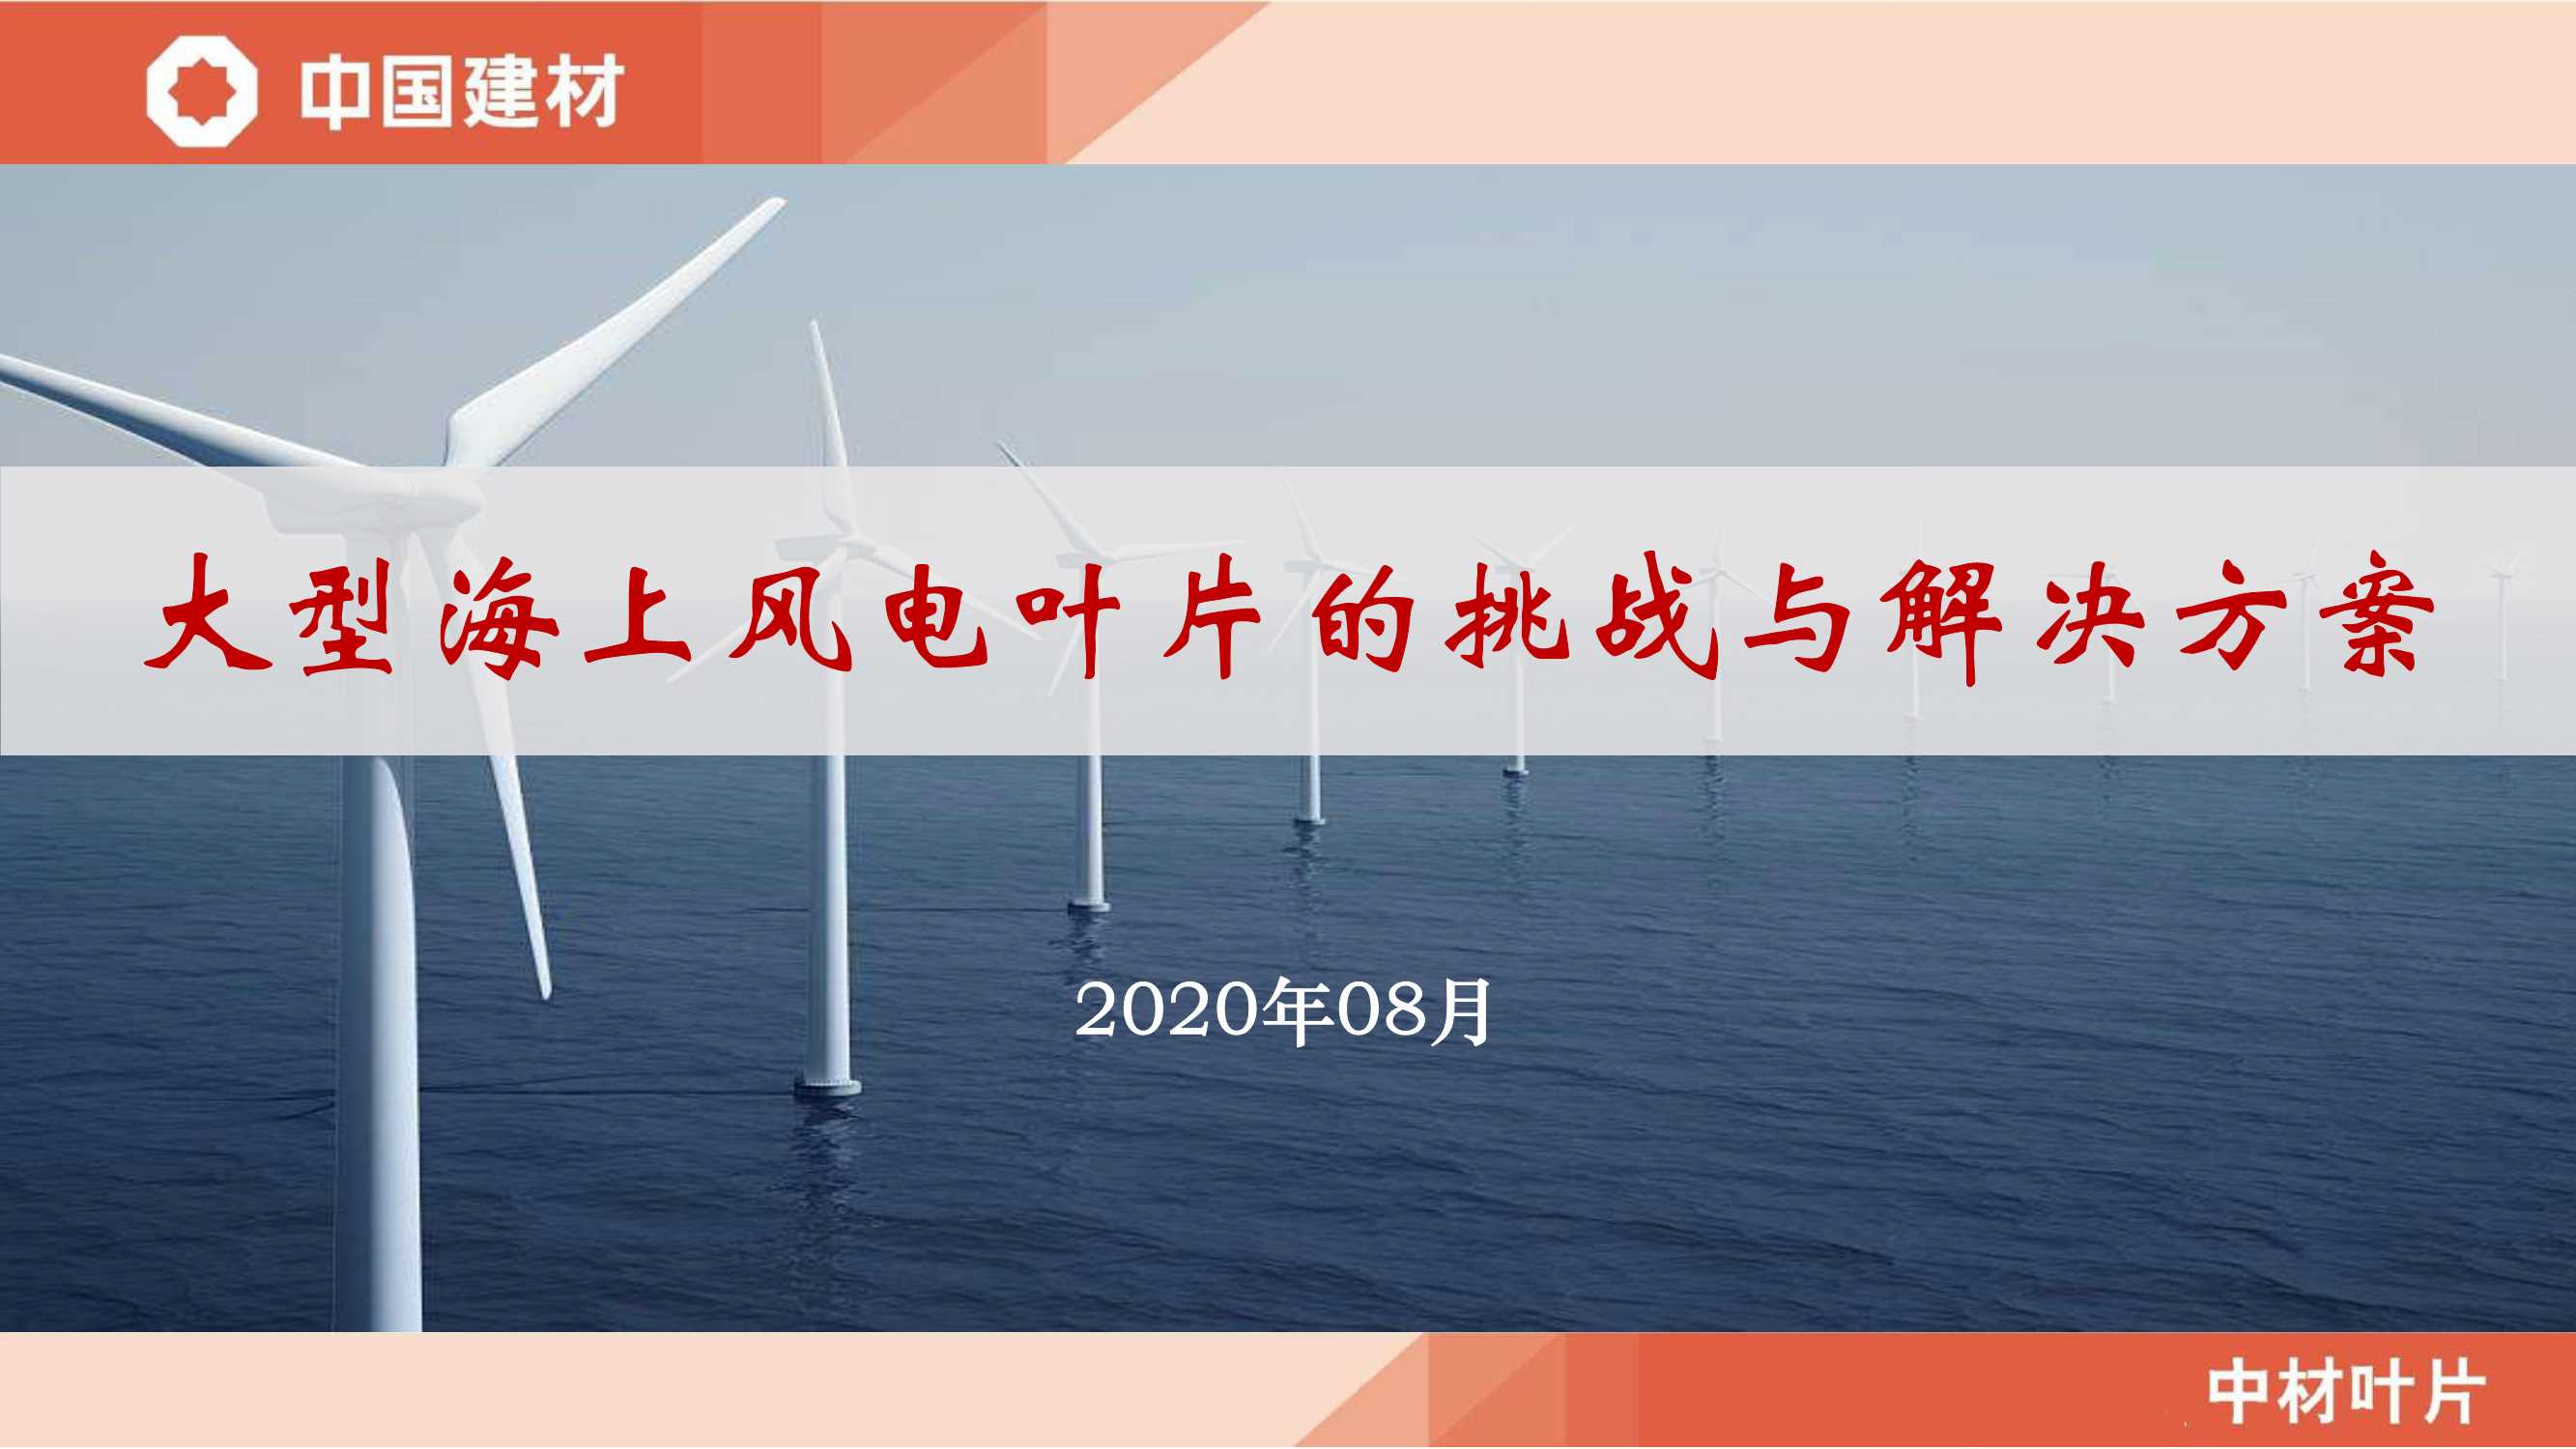 大型海上风电叶片的挑战与解决方案-鲁晓锋-2020.08-34页